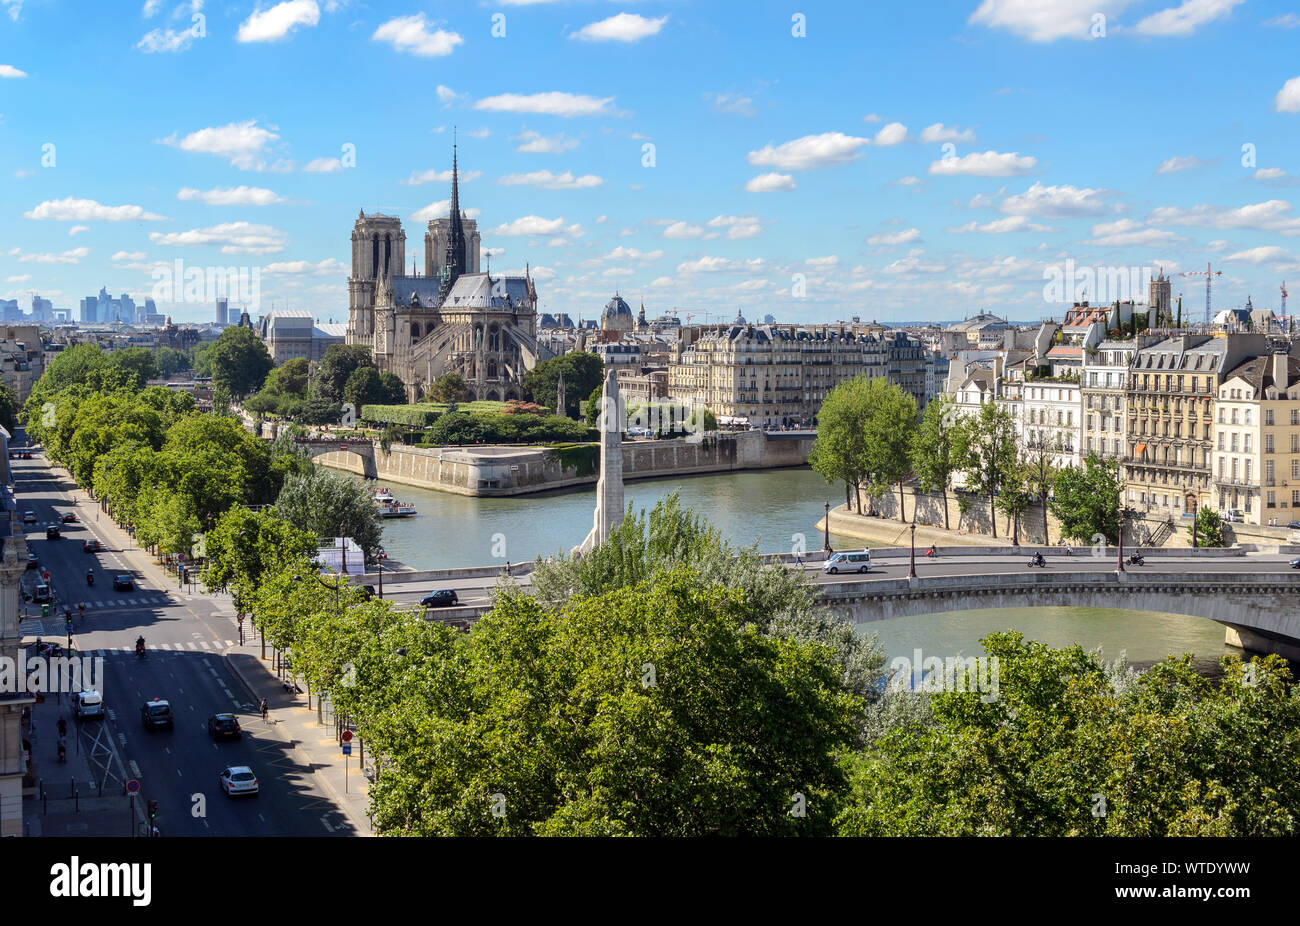 Top Aussicht auf Paris aus der arabischen Welt. Der Pont de la Tournelle Brücke überspannt den Fluss Seine, Notre-Dame Kathedrale sind zu beobachten. Stockfoto